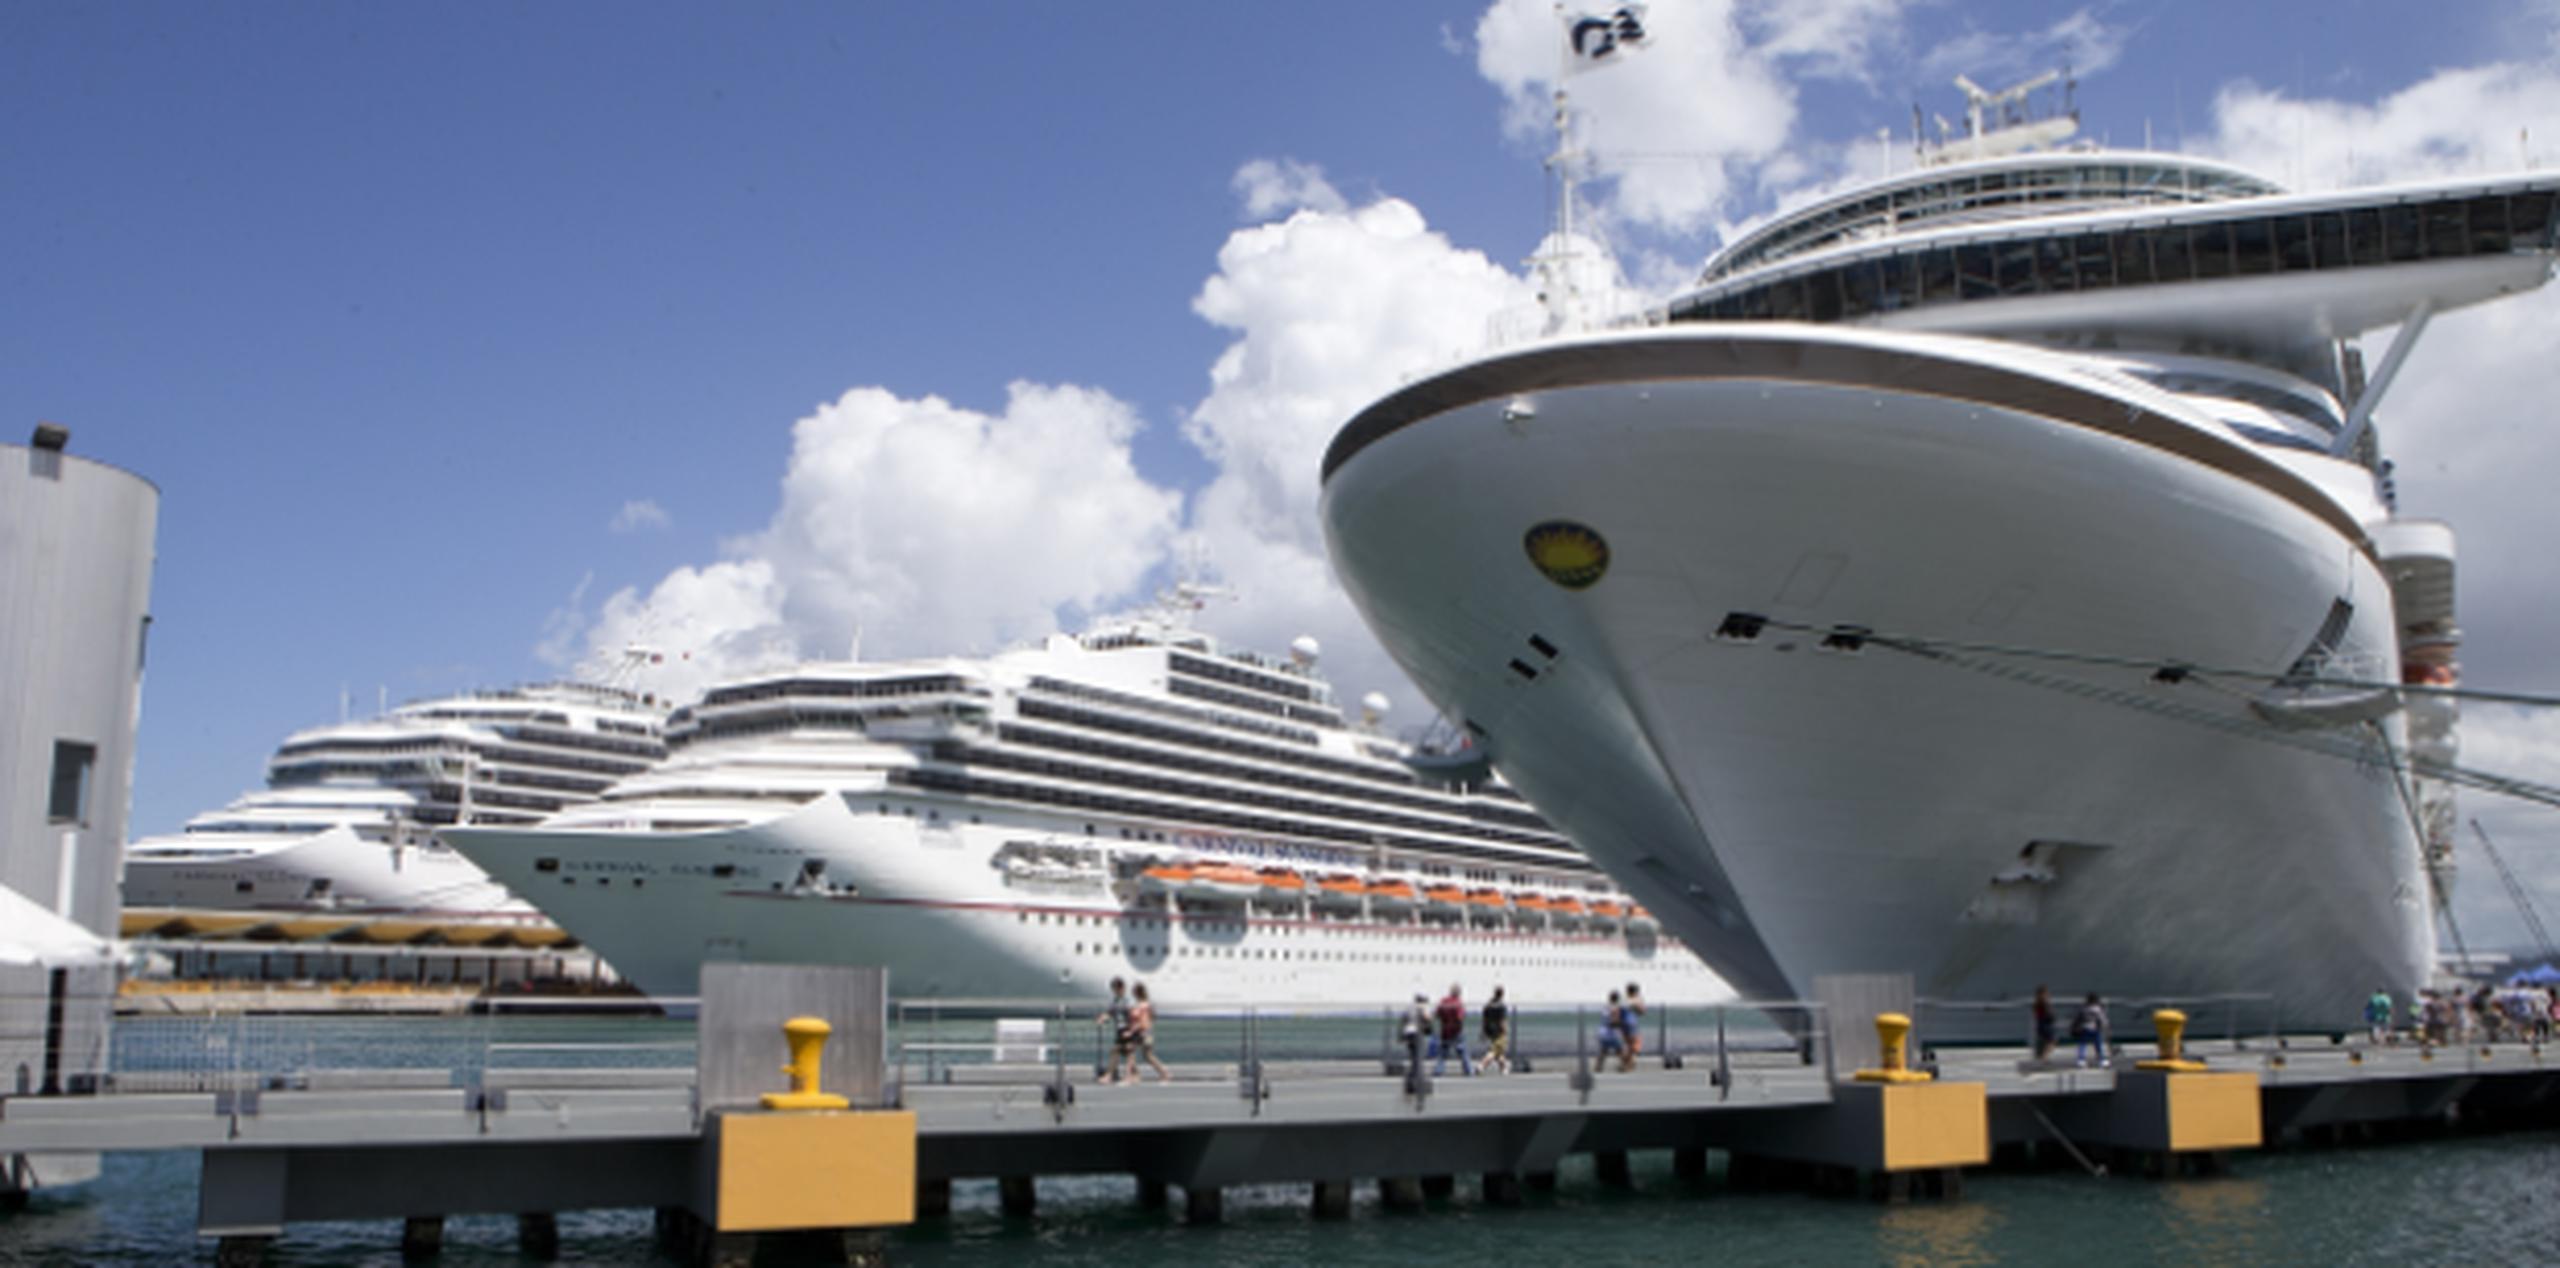 Entre los dos tendrán 10 visitas, lo que generará la visita de unos 60,000 pasajeros adicionales al Puerto de San Juan. (Archivo)